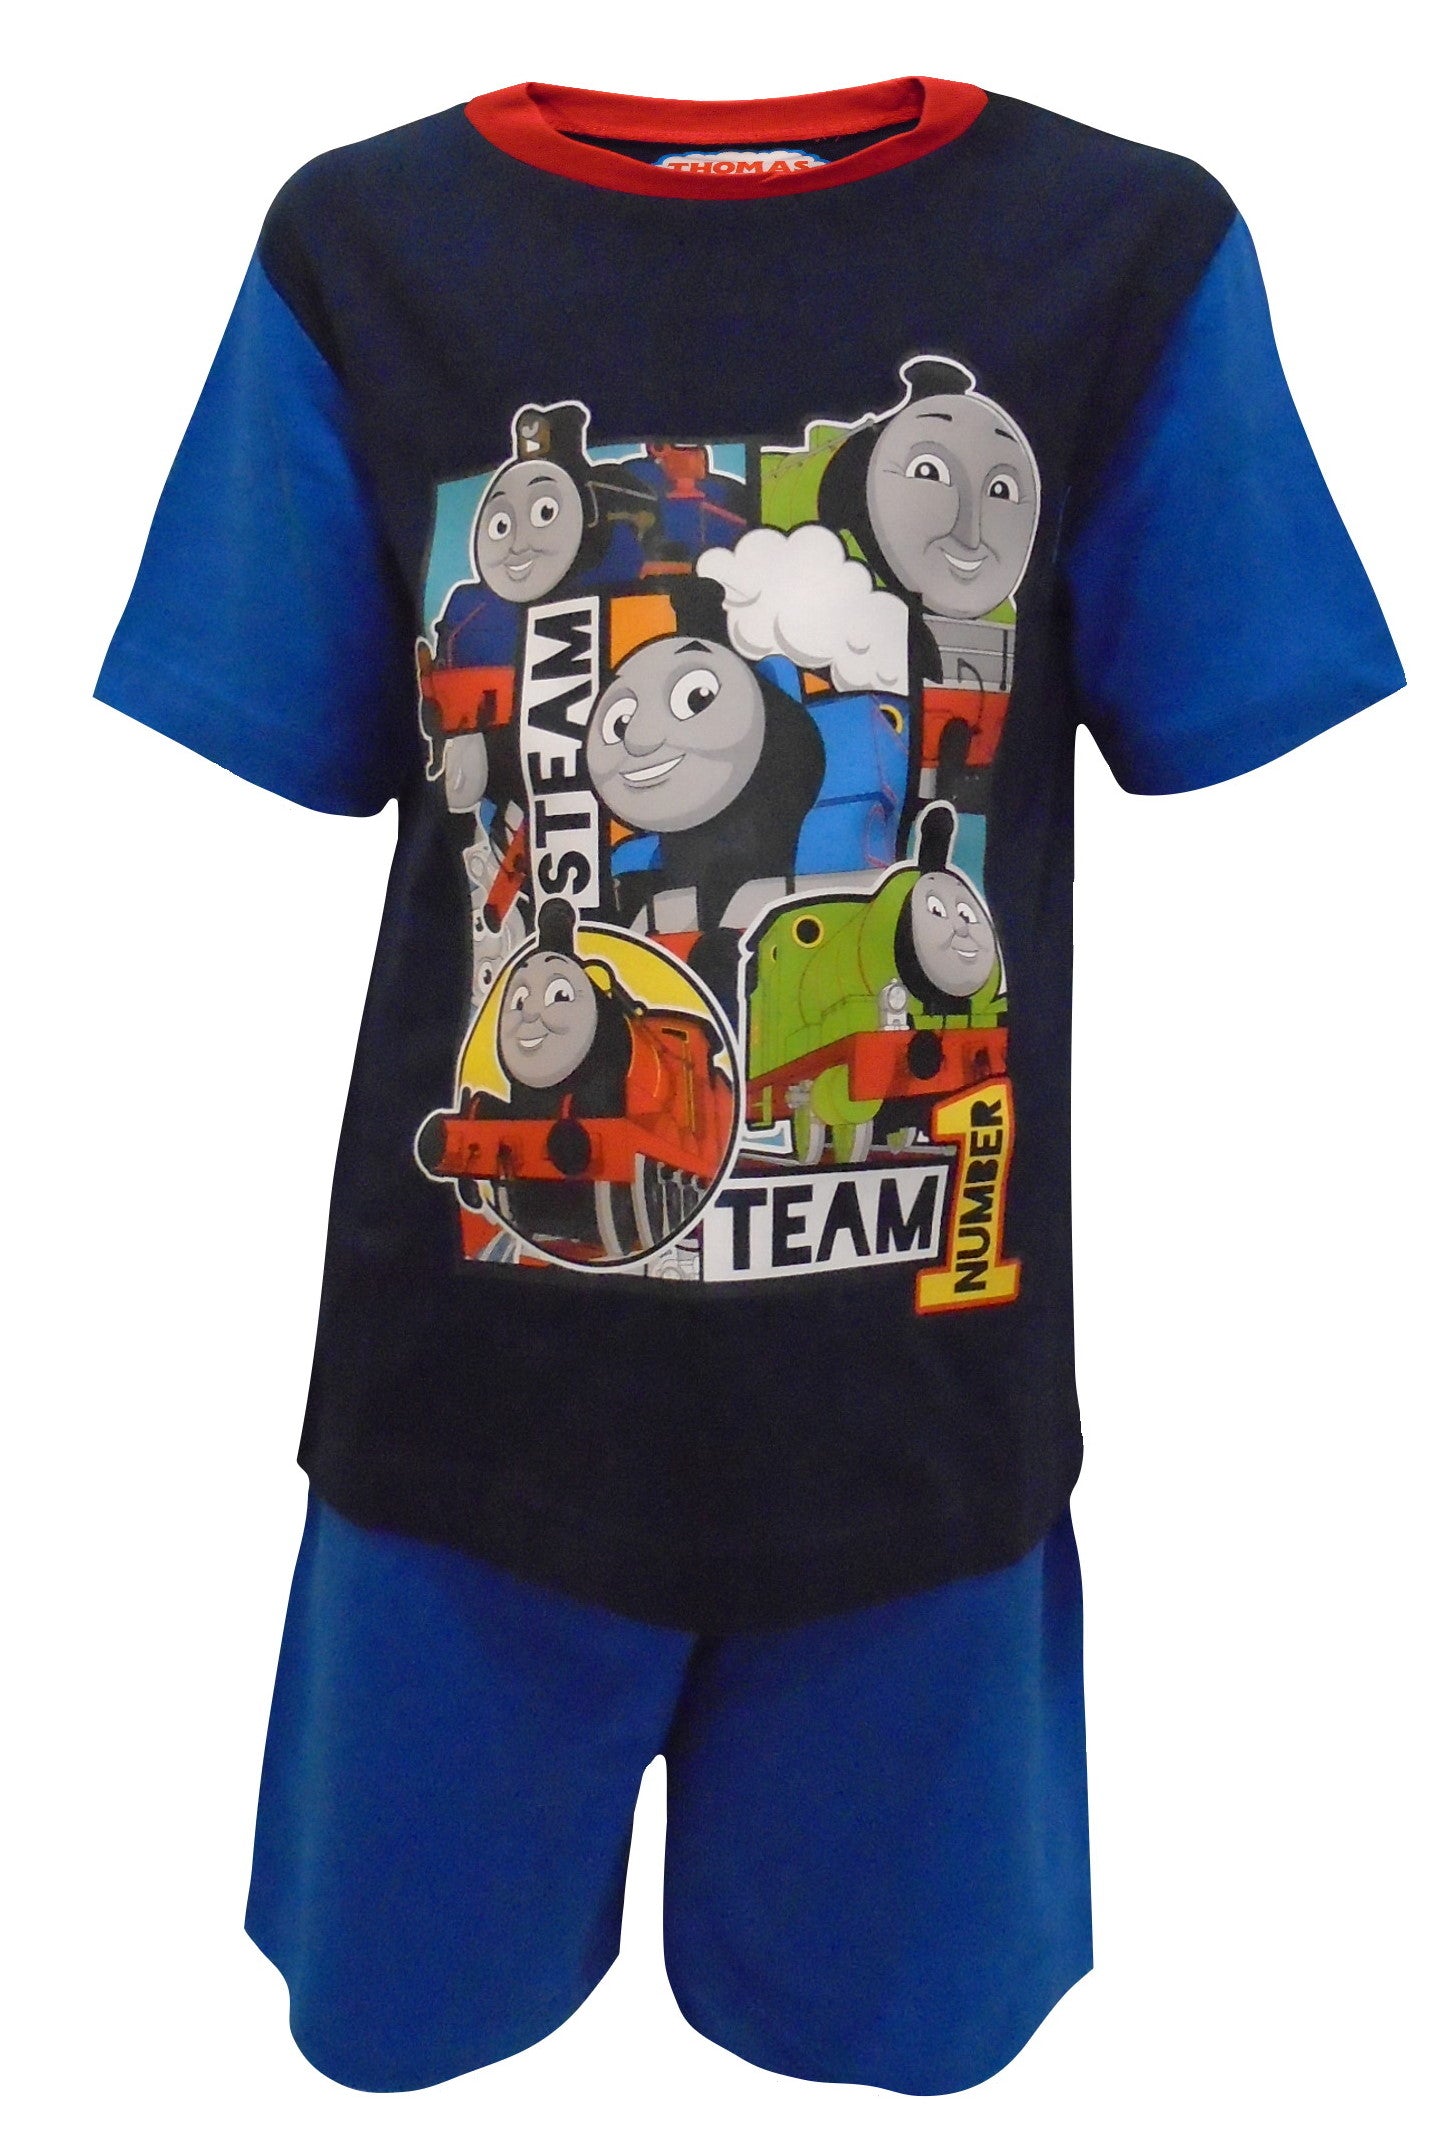 Thomas the Tank Engine "Steam" Boys Pyjamas